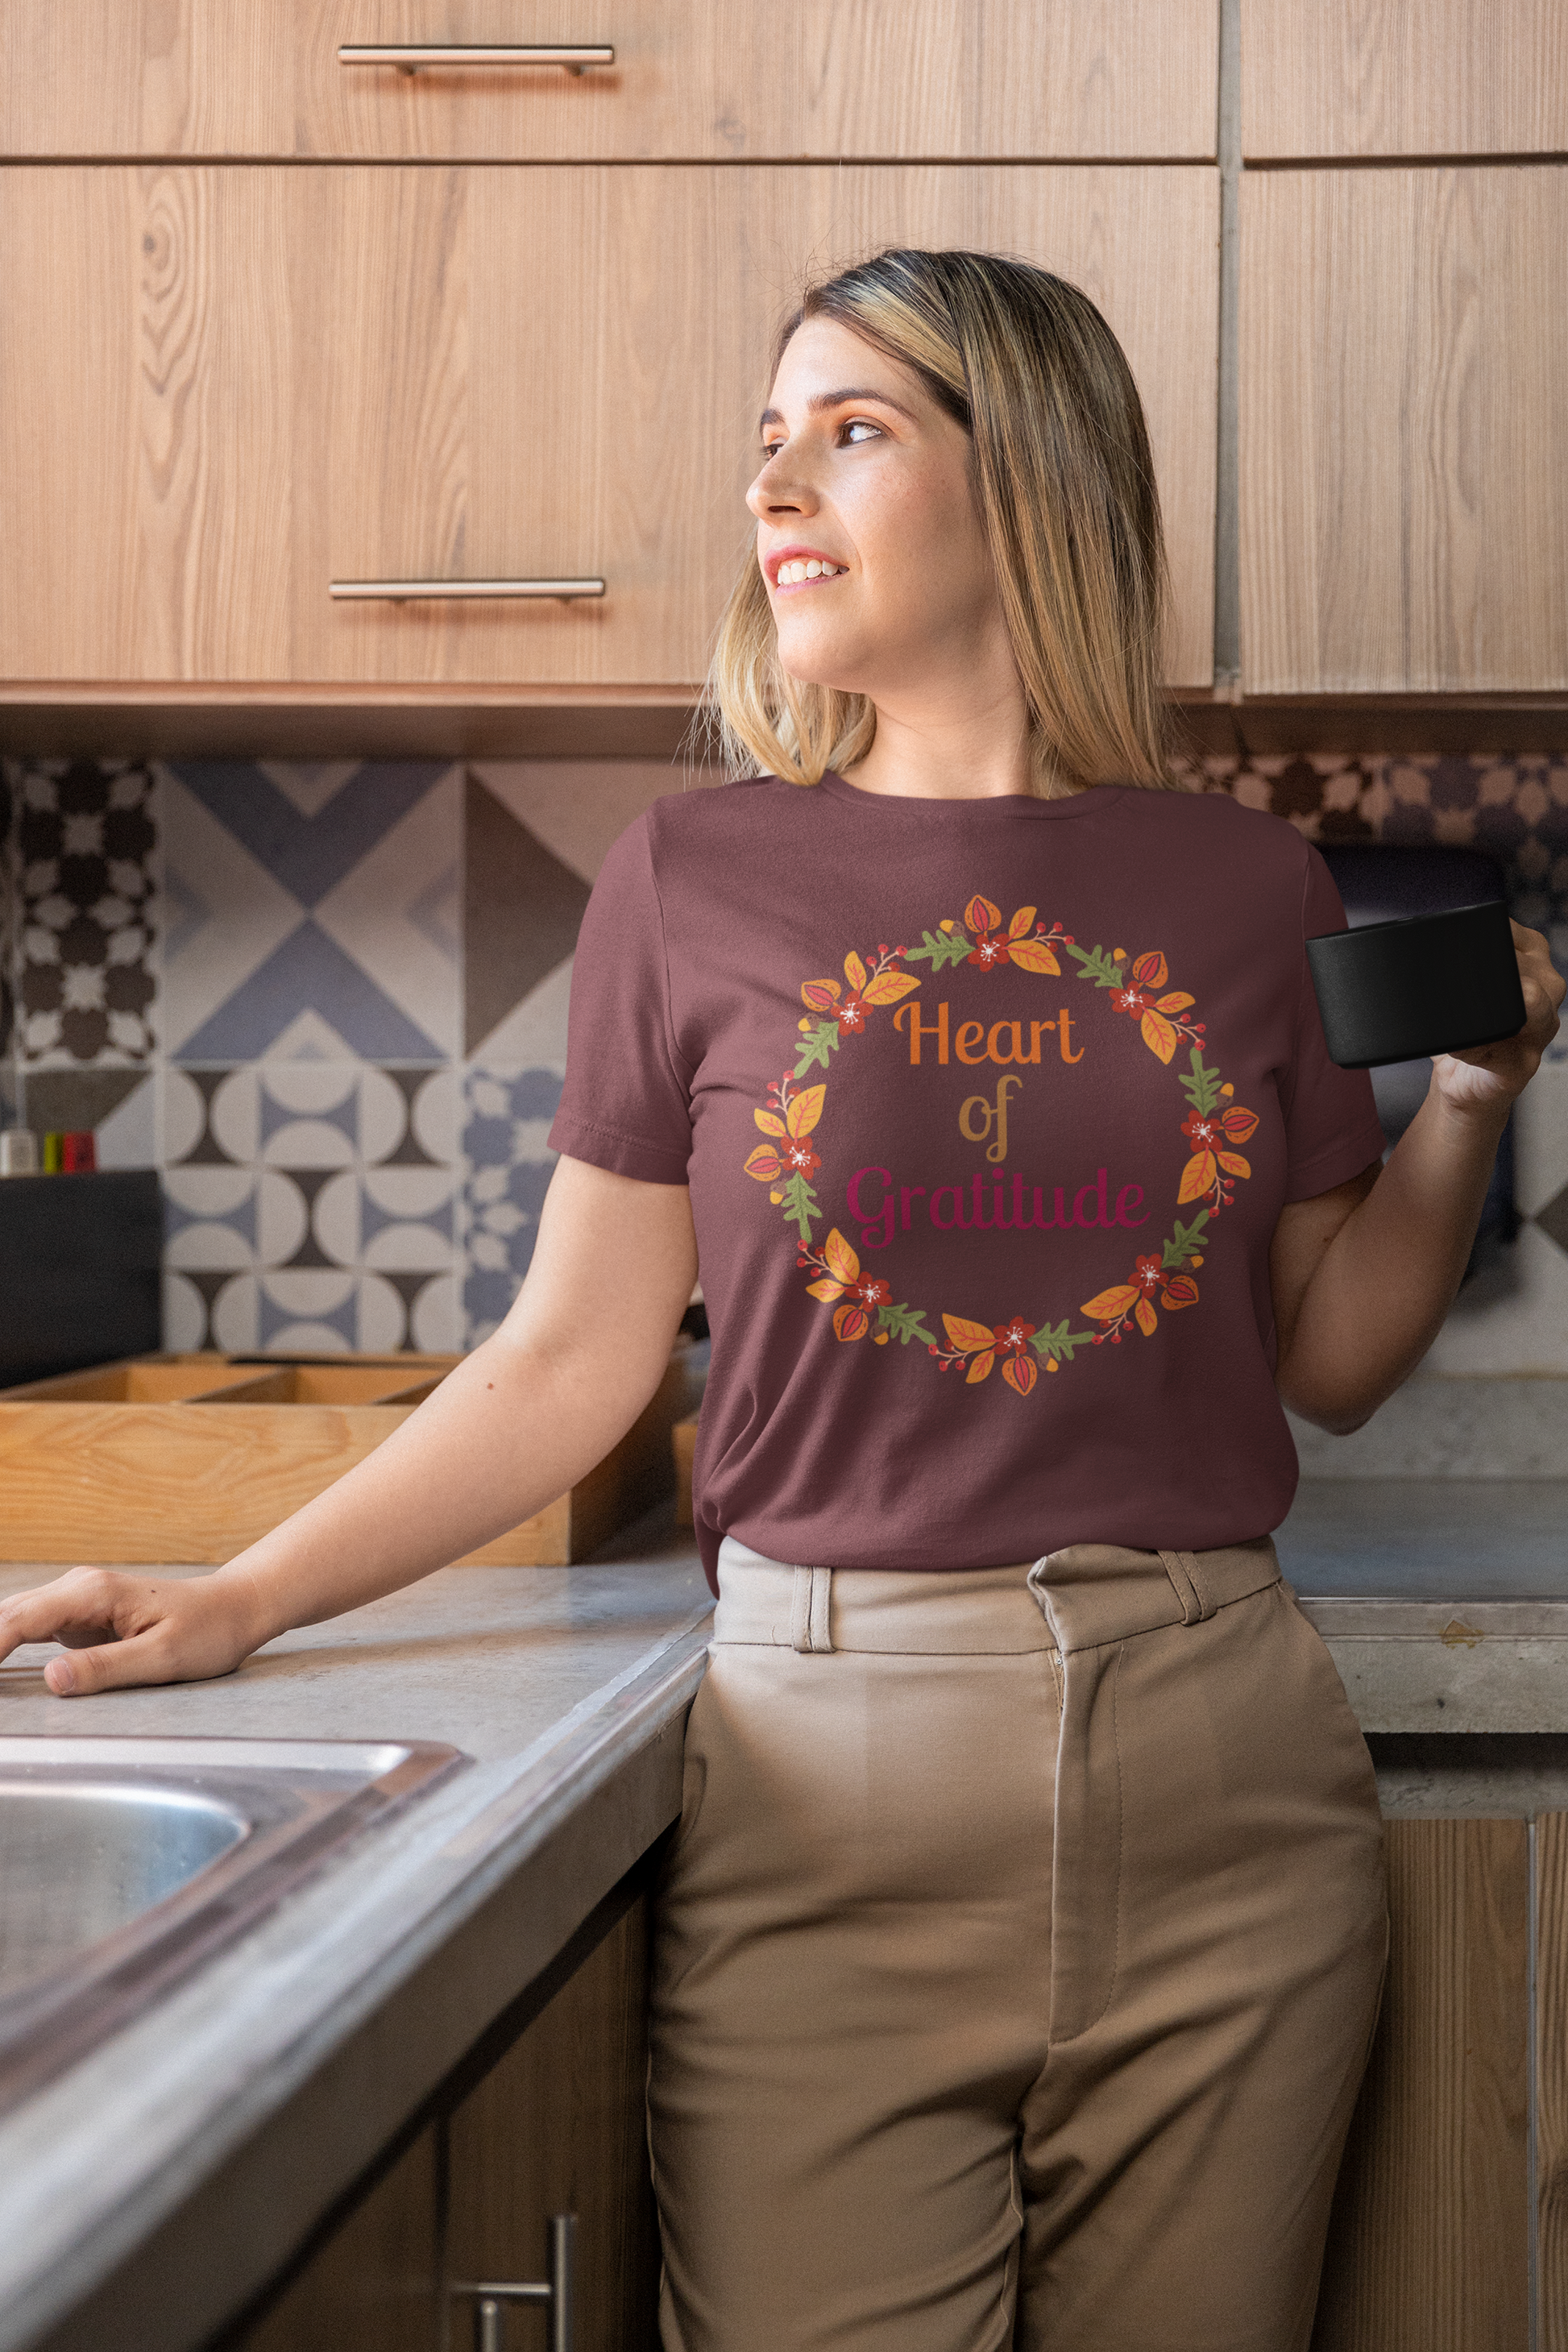 Heart of Gratitude Flower Circle Thanksgiving T-Shirt - Unisex - Motivational Treats